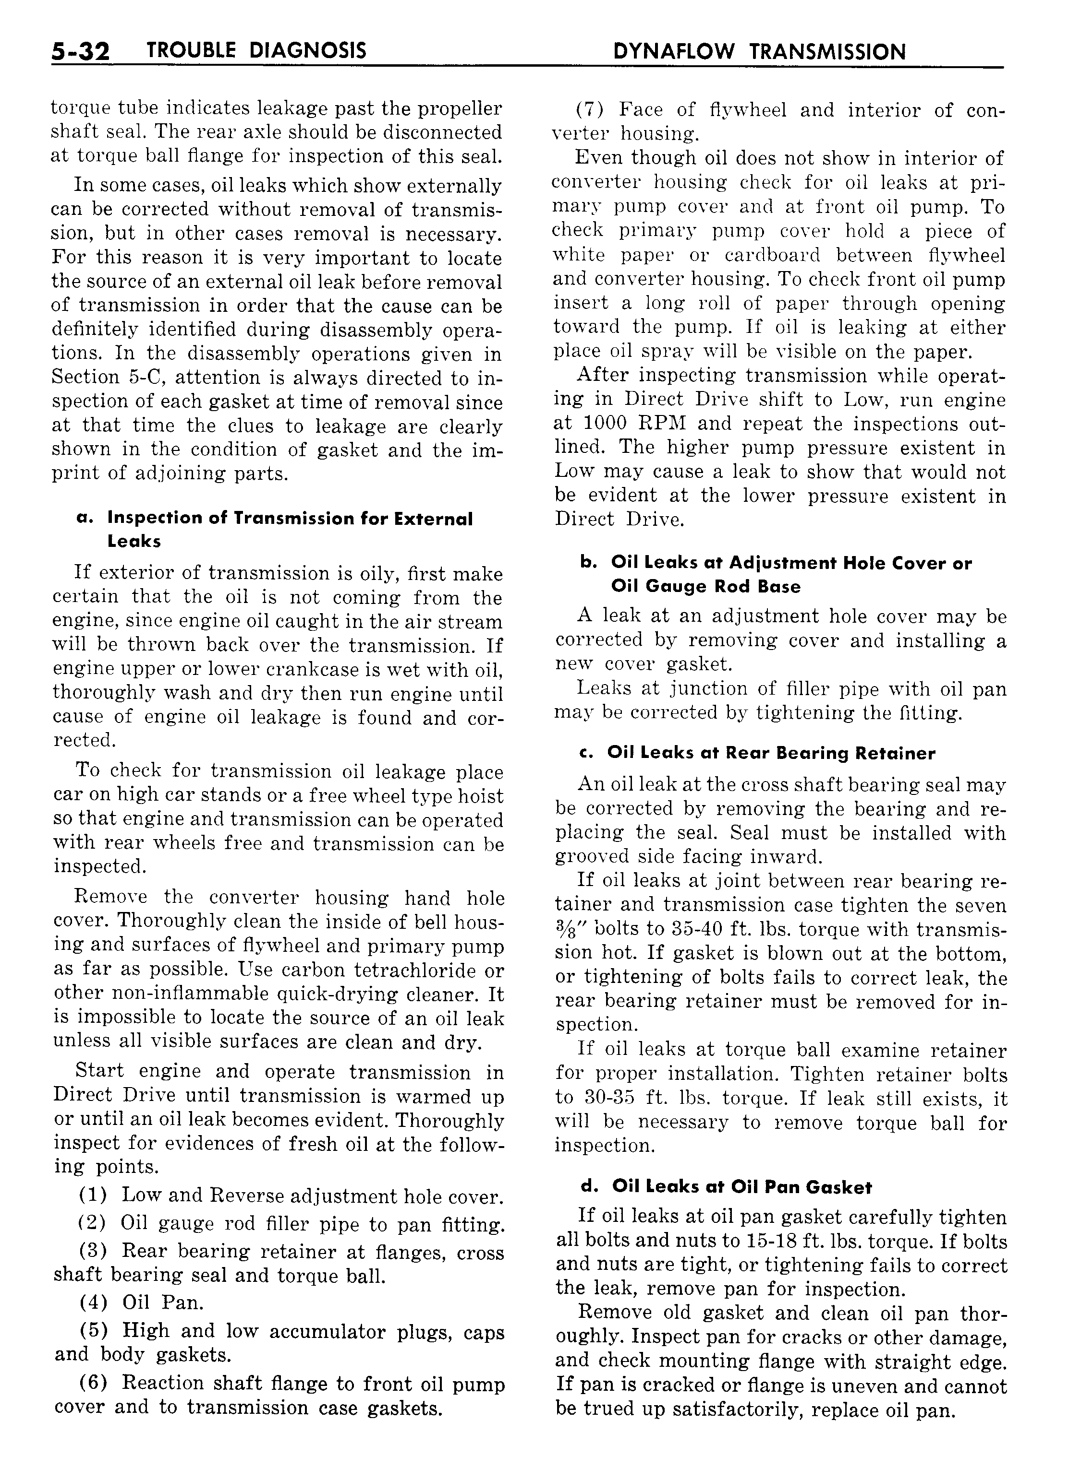 n_06 1957 Buick Shop Manual - Dynaflow-032-032.jpg